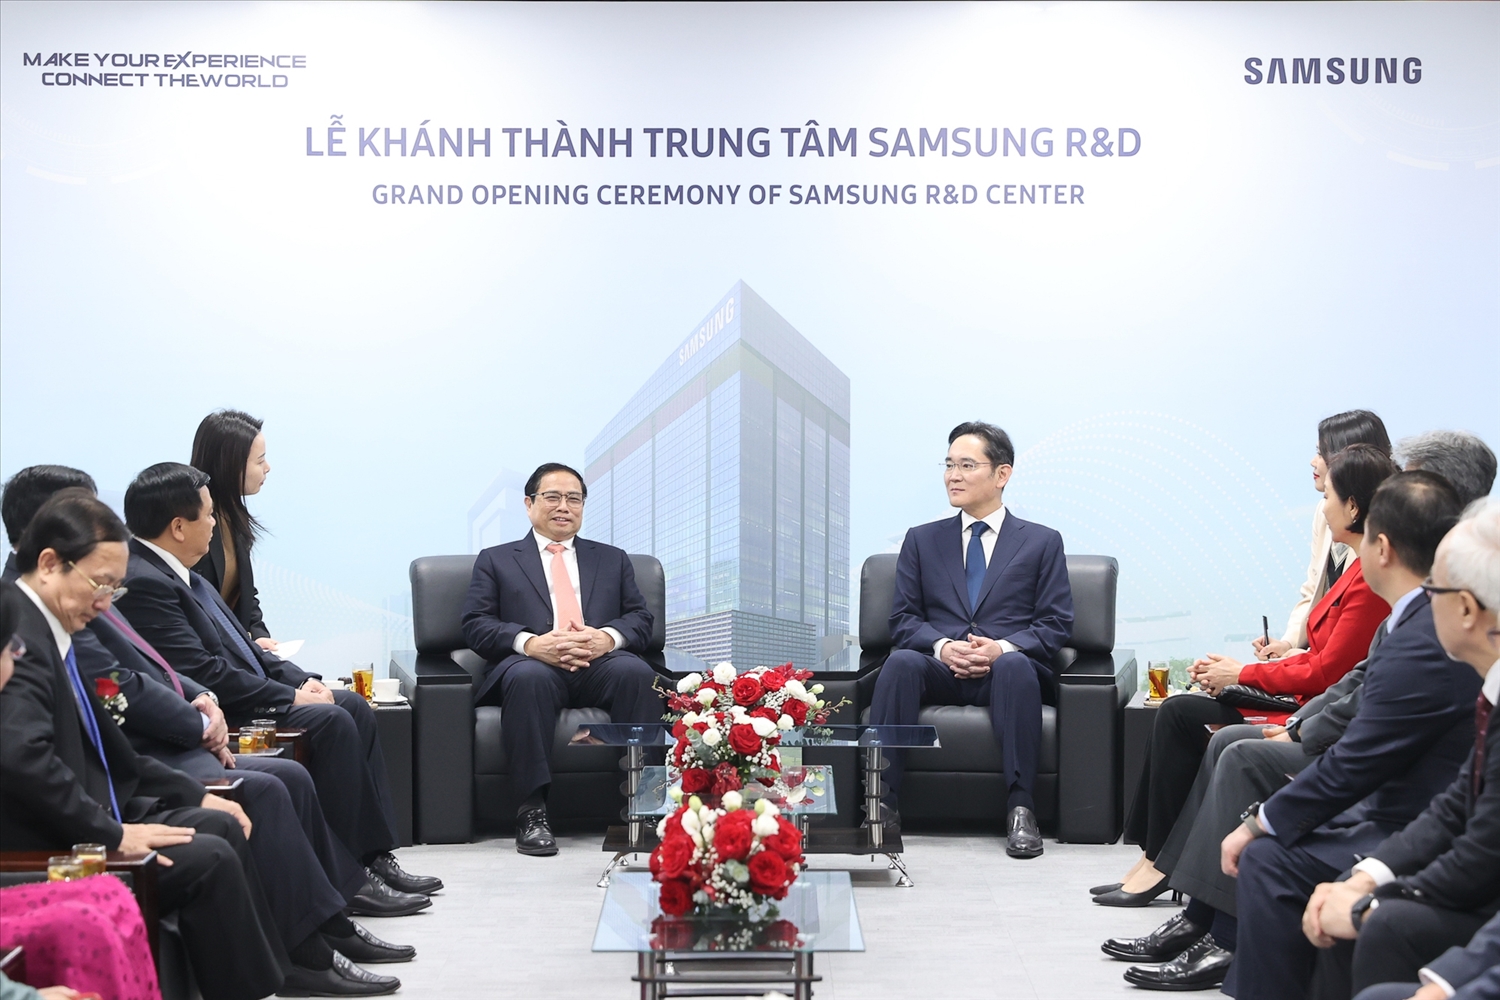 Chủ tịch Samsung khẳng định sẽ đẩy mạnh hoạt động R&D tại Việt Nam, đào tạo, phát triển nhân lực có thể đáp ứng môi trường làm việc toàn cầu, phối hợp với phía Việt Nam để nâng cao hơn nữa tỷ lệ nội địa hóa cả phần cứng và phần mềm - Ảnh: VGP/Nhật Bắc